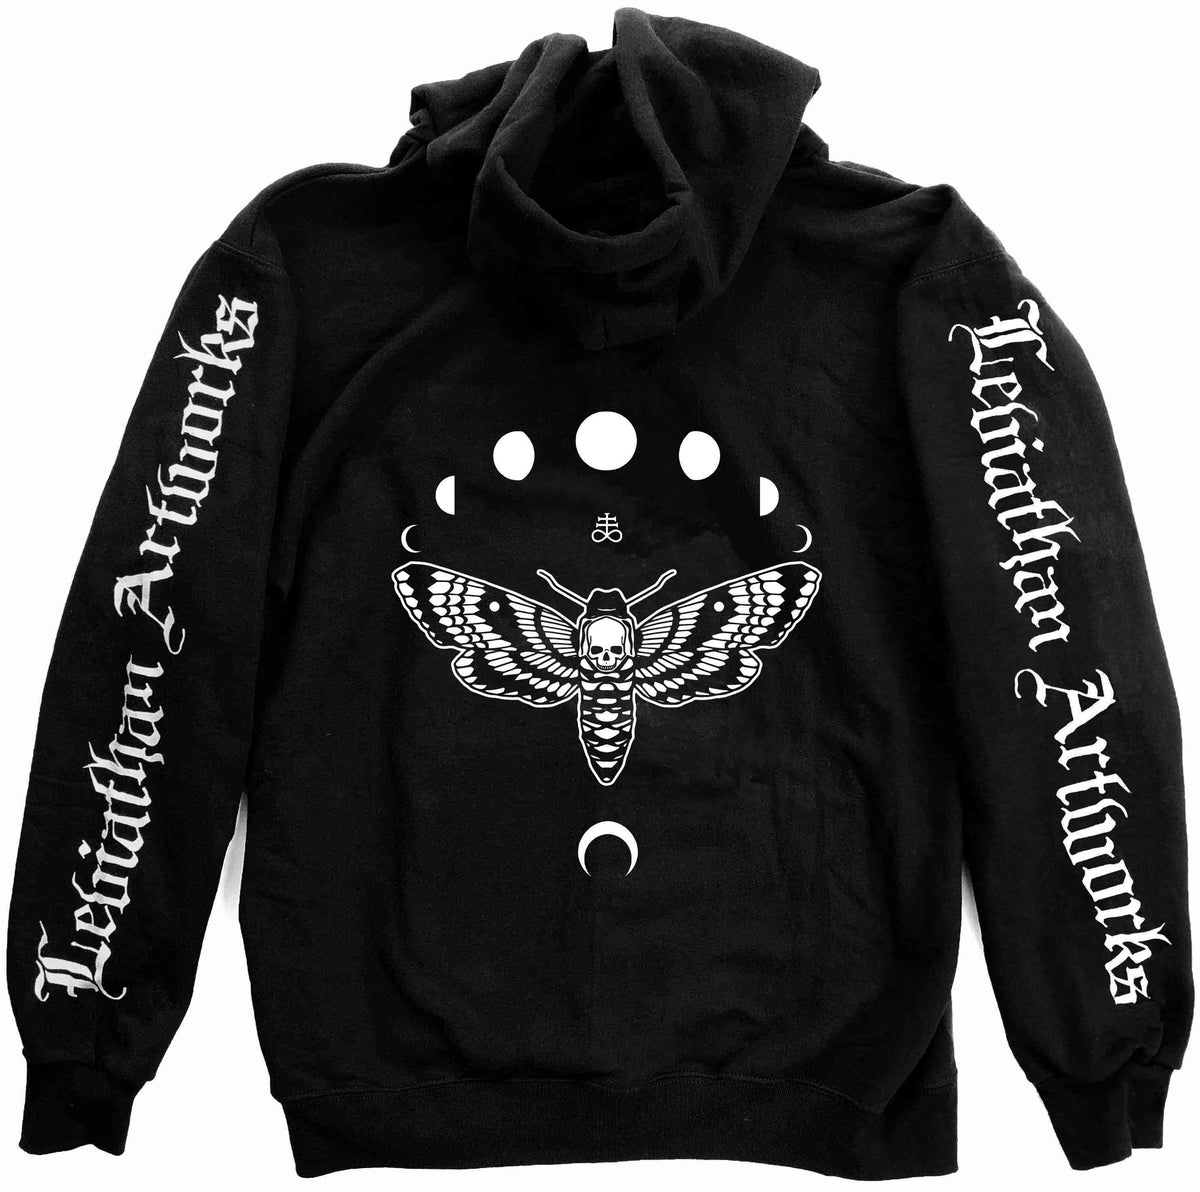 Black Seas of Infinity zip hoodie – Leviathan Artworks